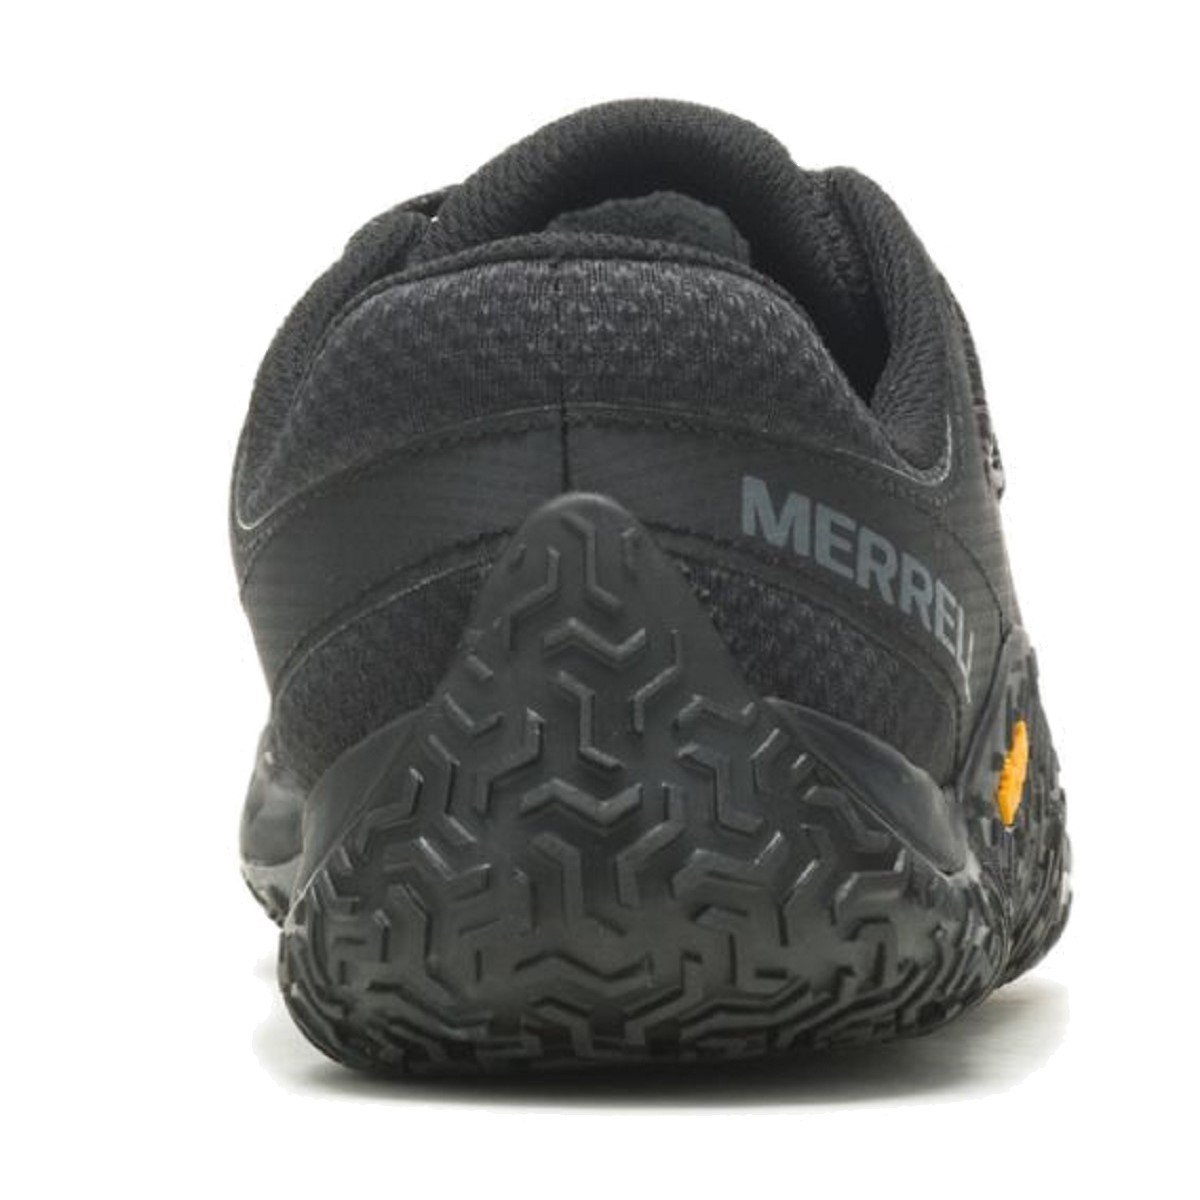 Obuv Merrell Trail Glove 7 M - čierna